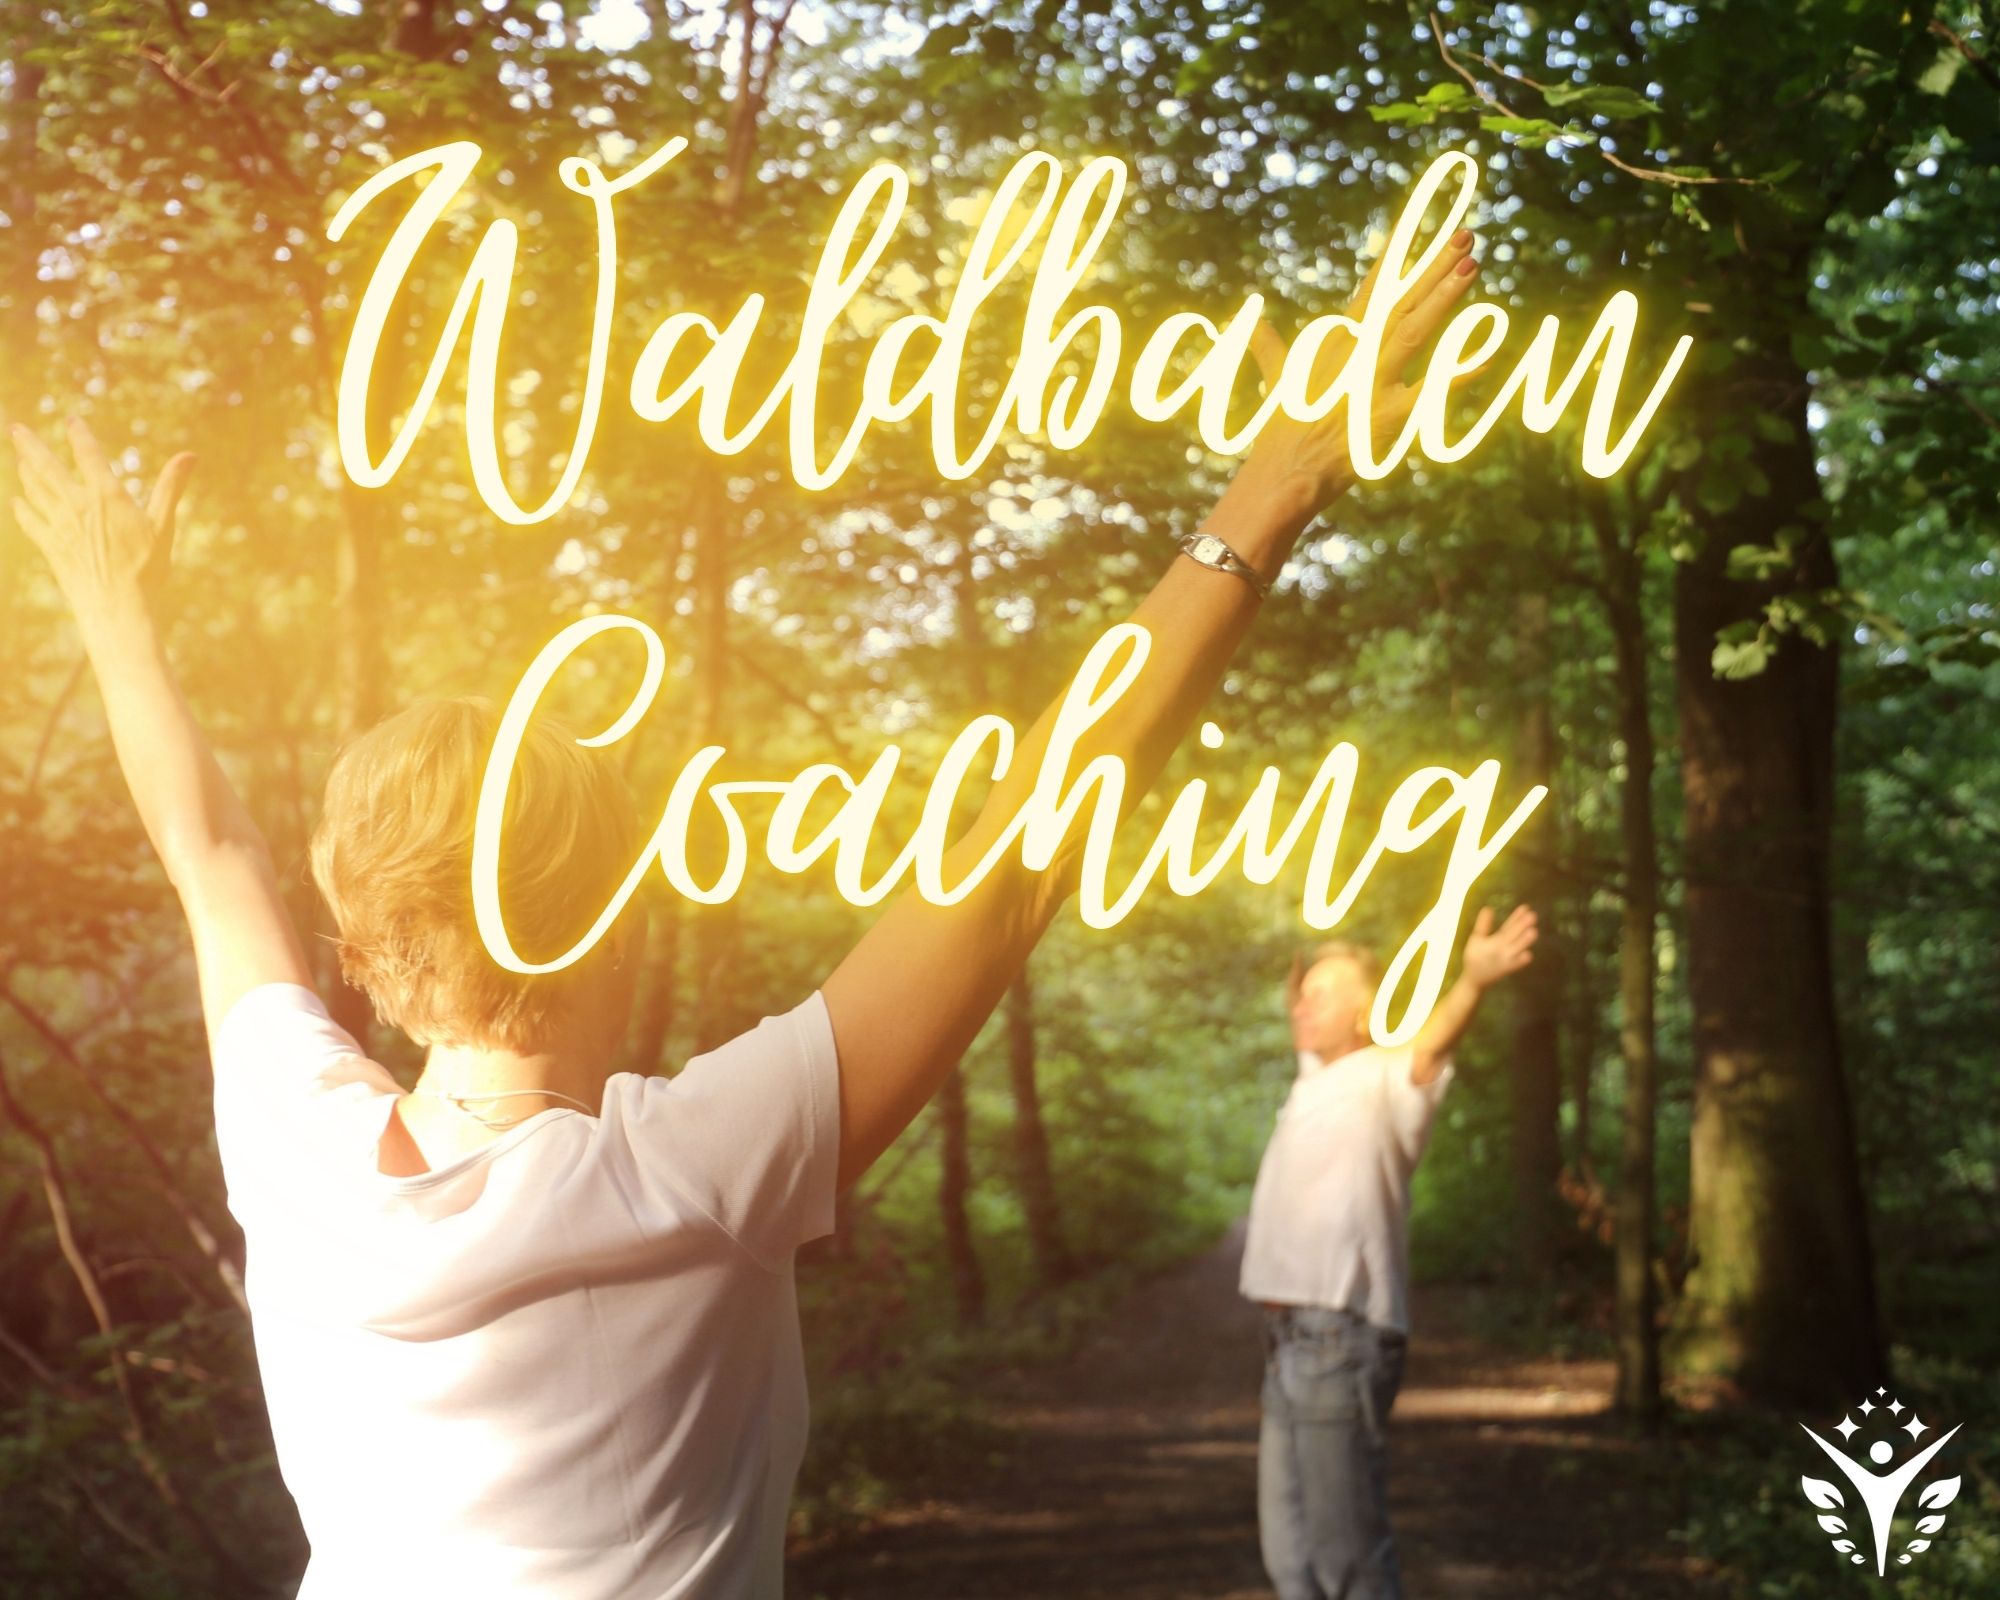 Waldbaden Coaching